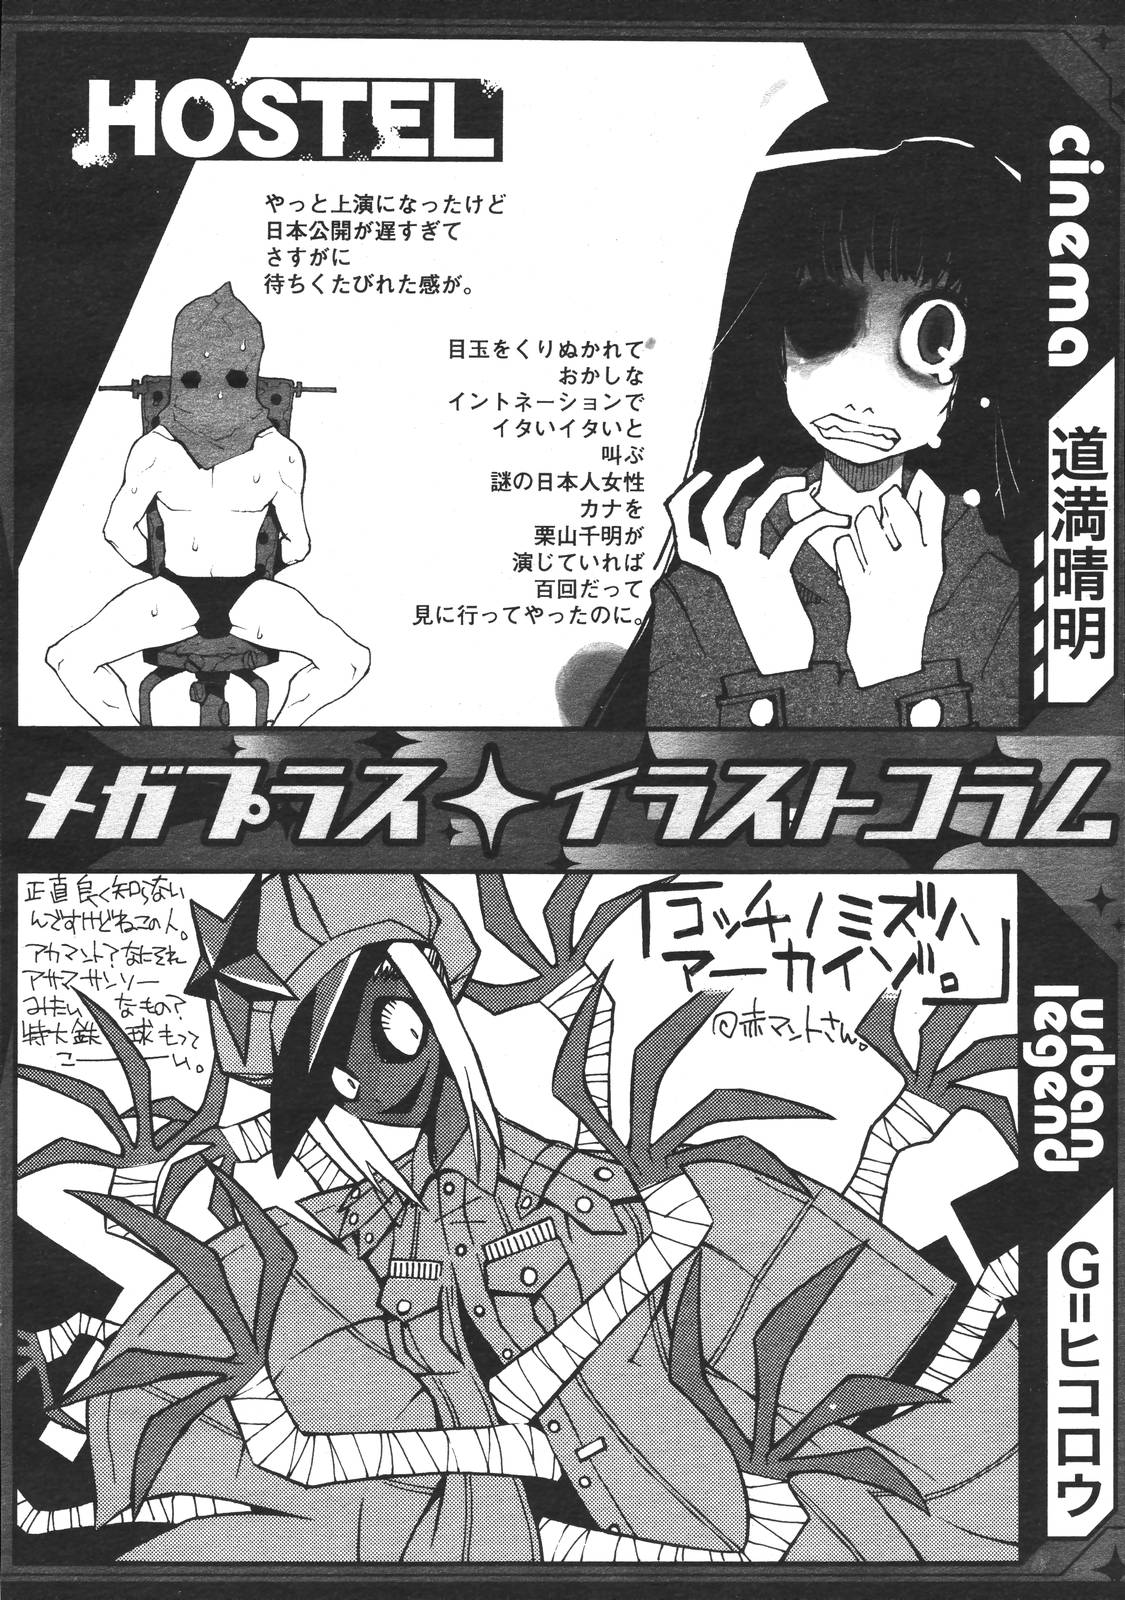 コミックメガプラスVol39 [2007-01]